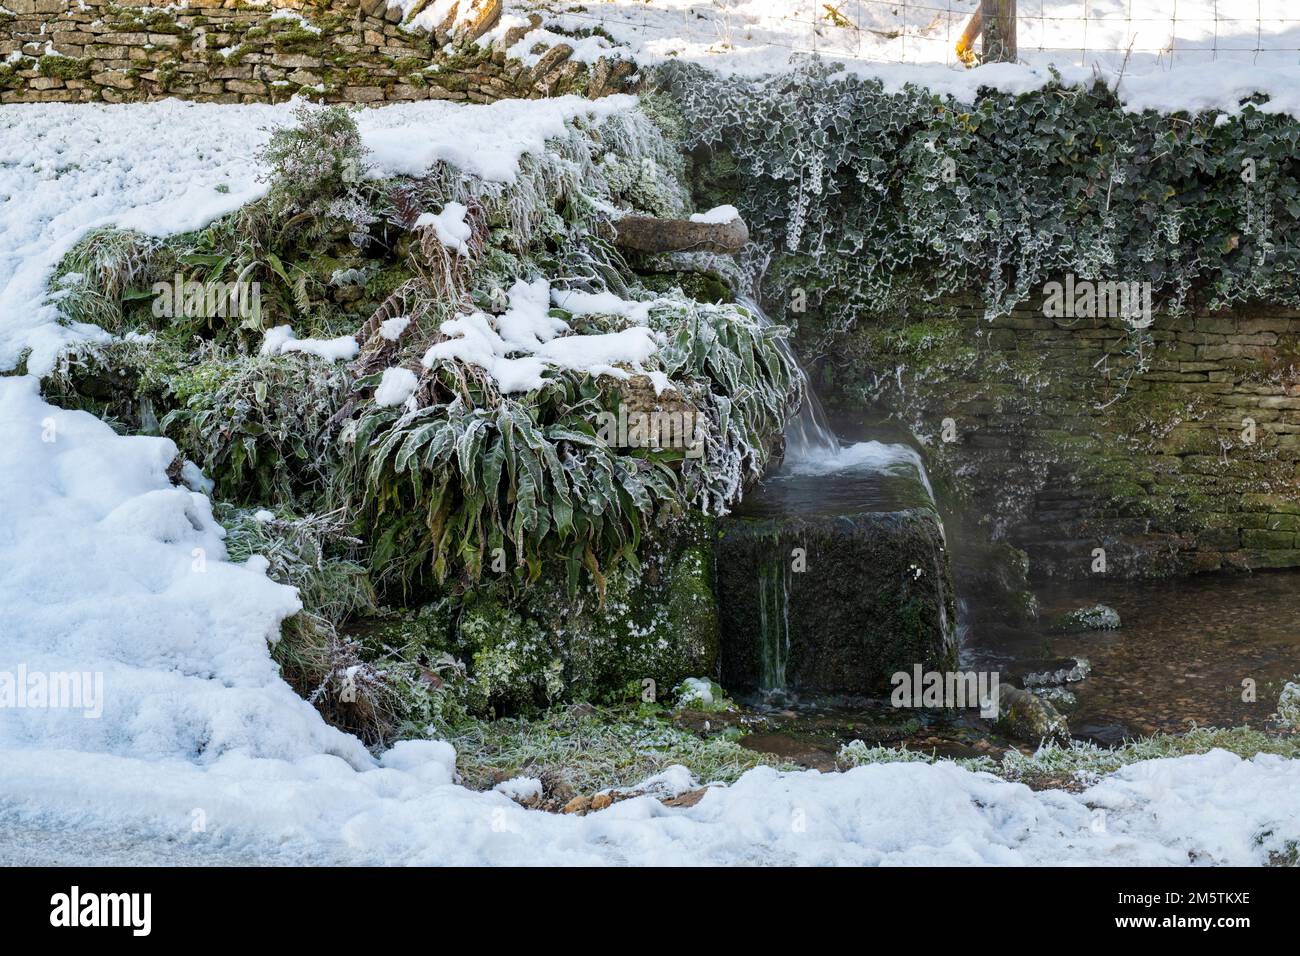 Neige d'hiver sur le bec d'eau de source de crocodile de pierre dans le village de cotswold de Compton Abdale. Cotswolds, Gloucestershire, Angleterre Banque D'Images